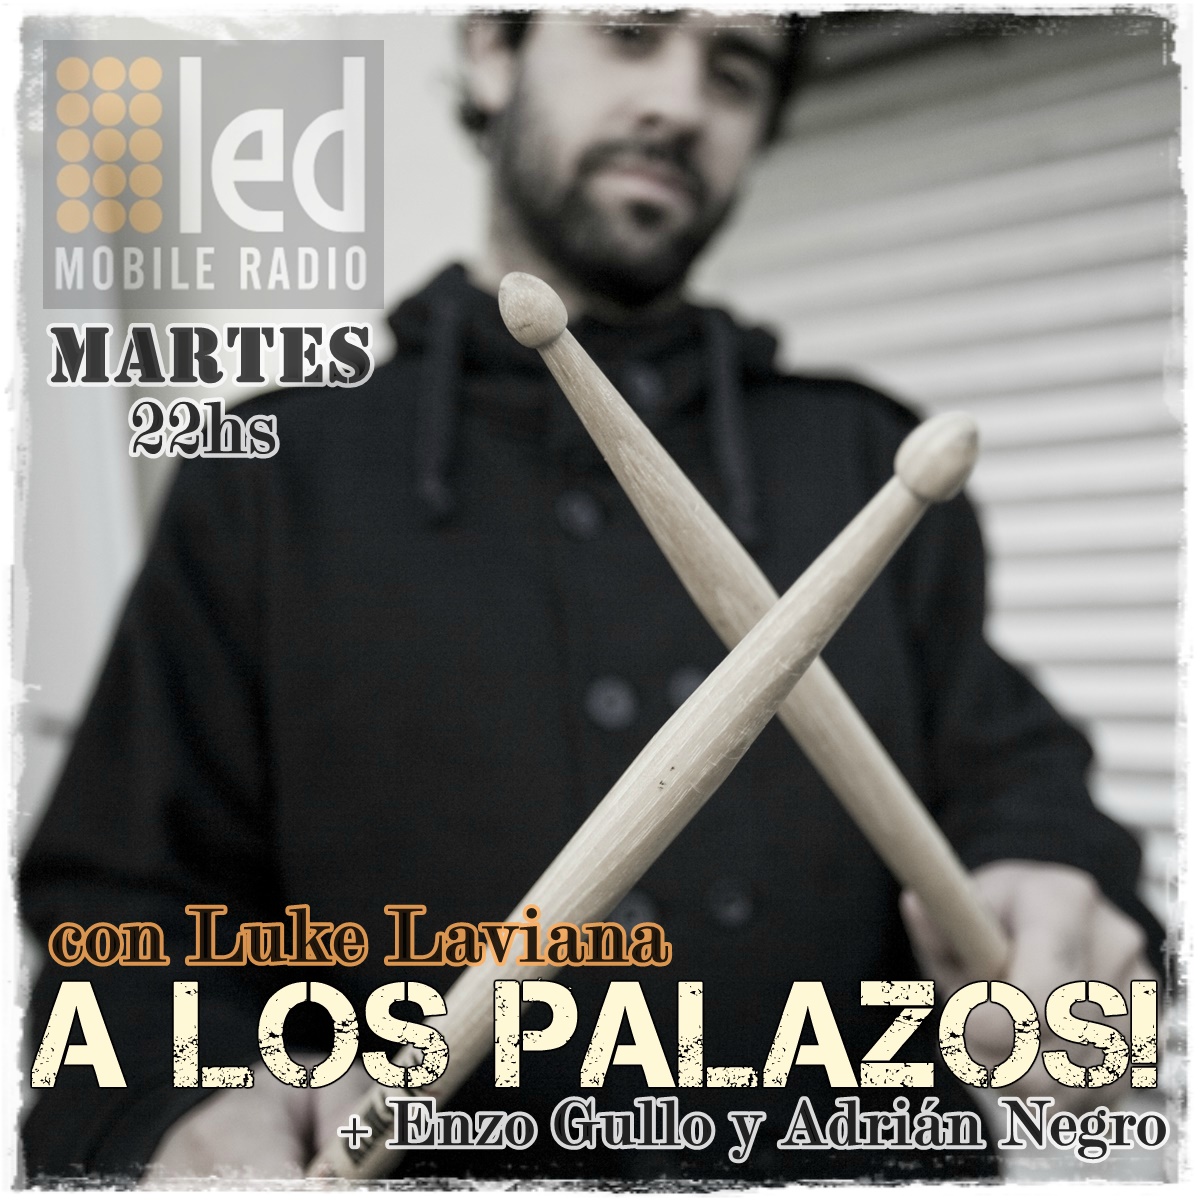 #Podcast A los Palazos! 27.06: Rolando Castello Jr #Aeroblus, Roy Quiroga #Ratones y @harmonicstop